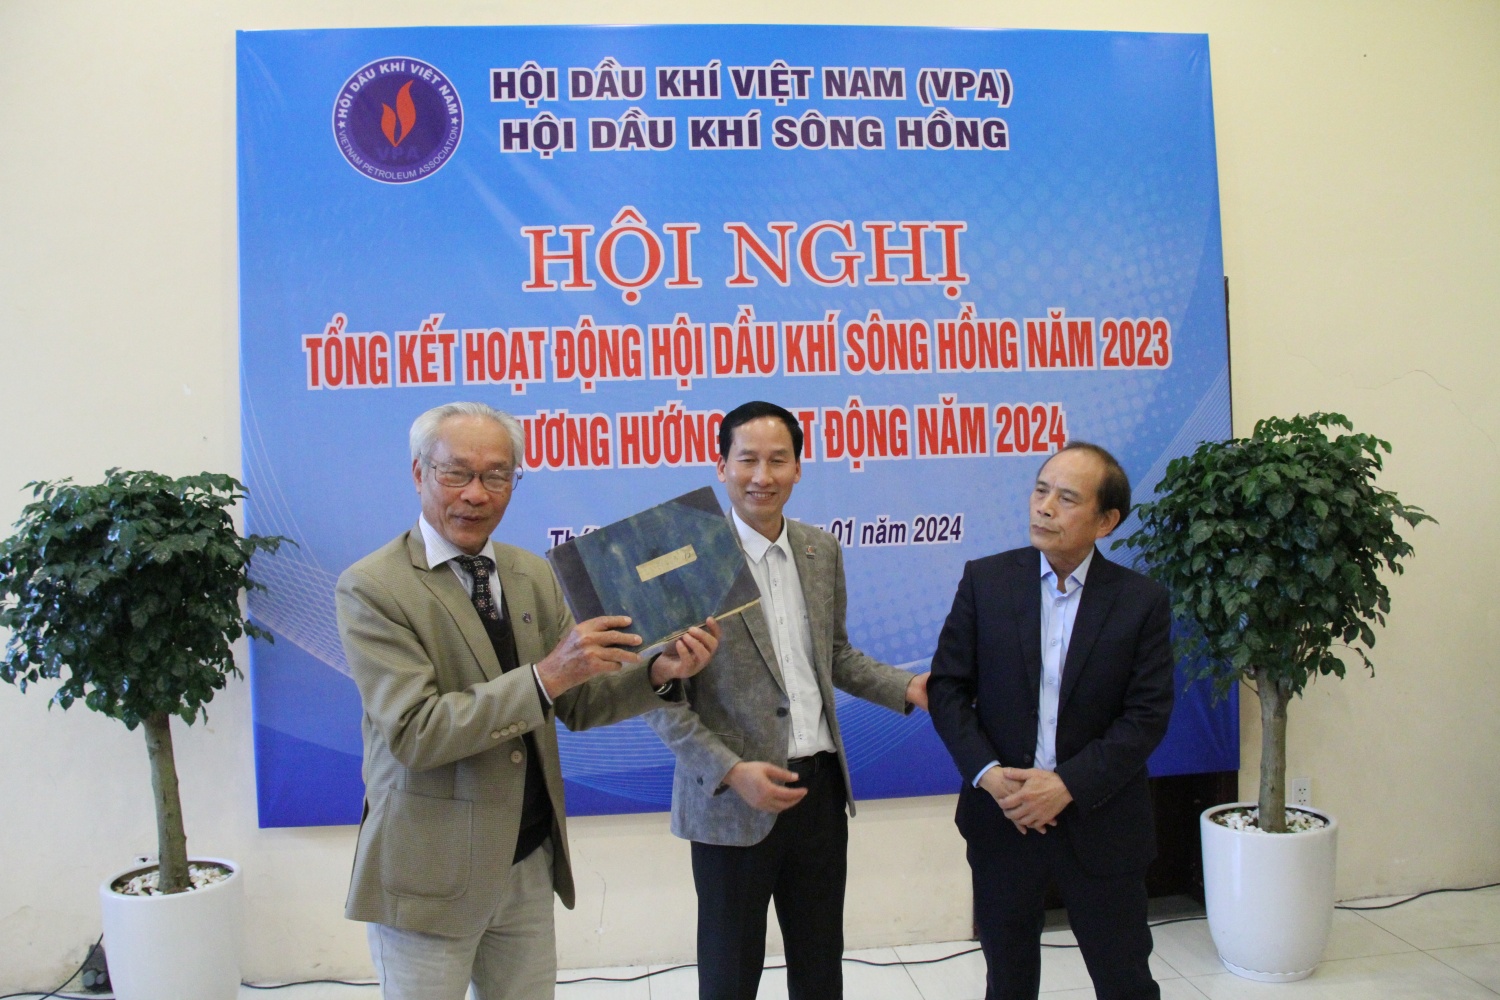 Ông Nguyễn Văn Toàn trao tặng cuốn sổ tay ghi chép “Lỗ khoan 61, 73 và 75” cho lãnh đạo Hội Dầu khí Sông Hồng